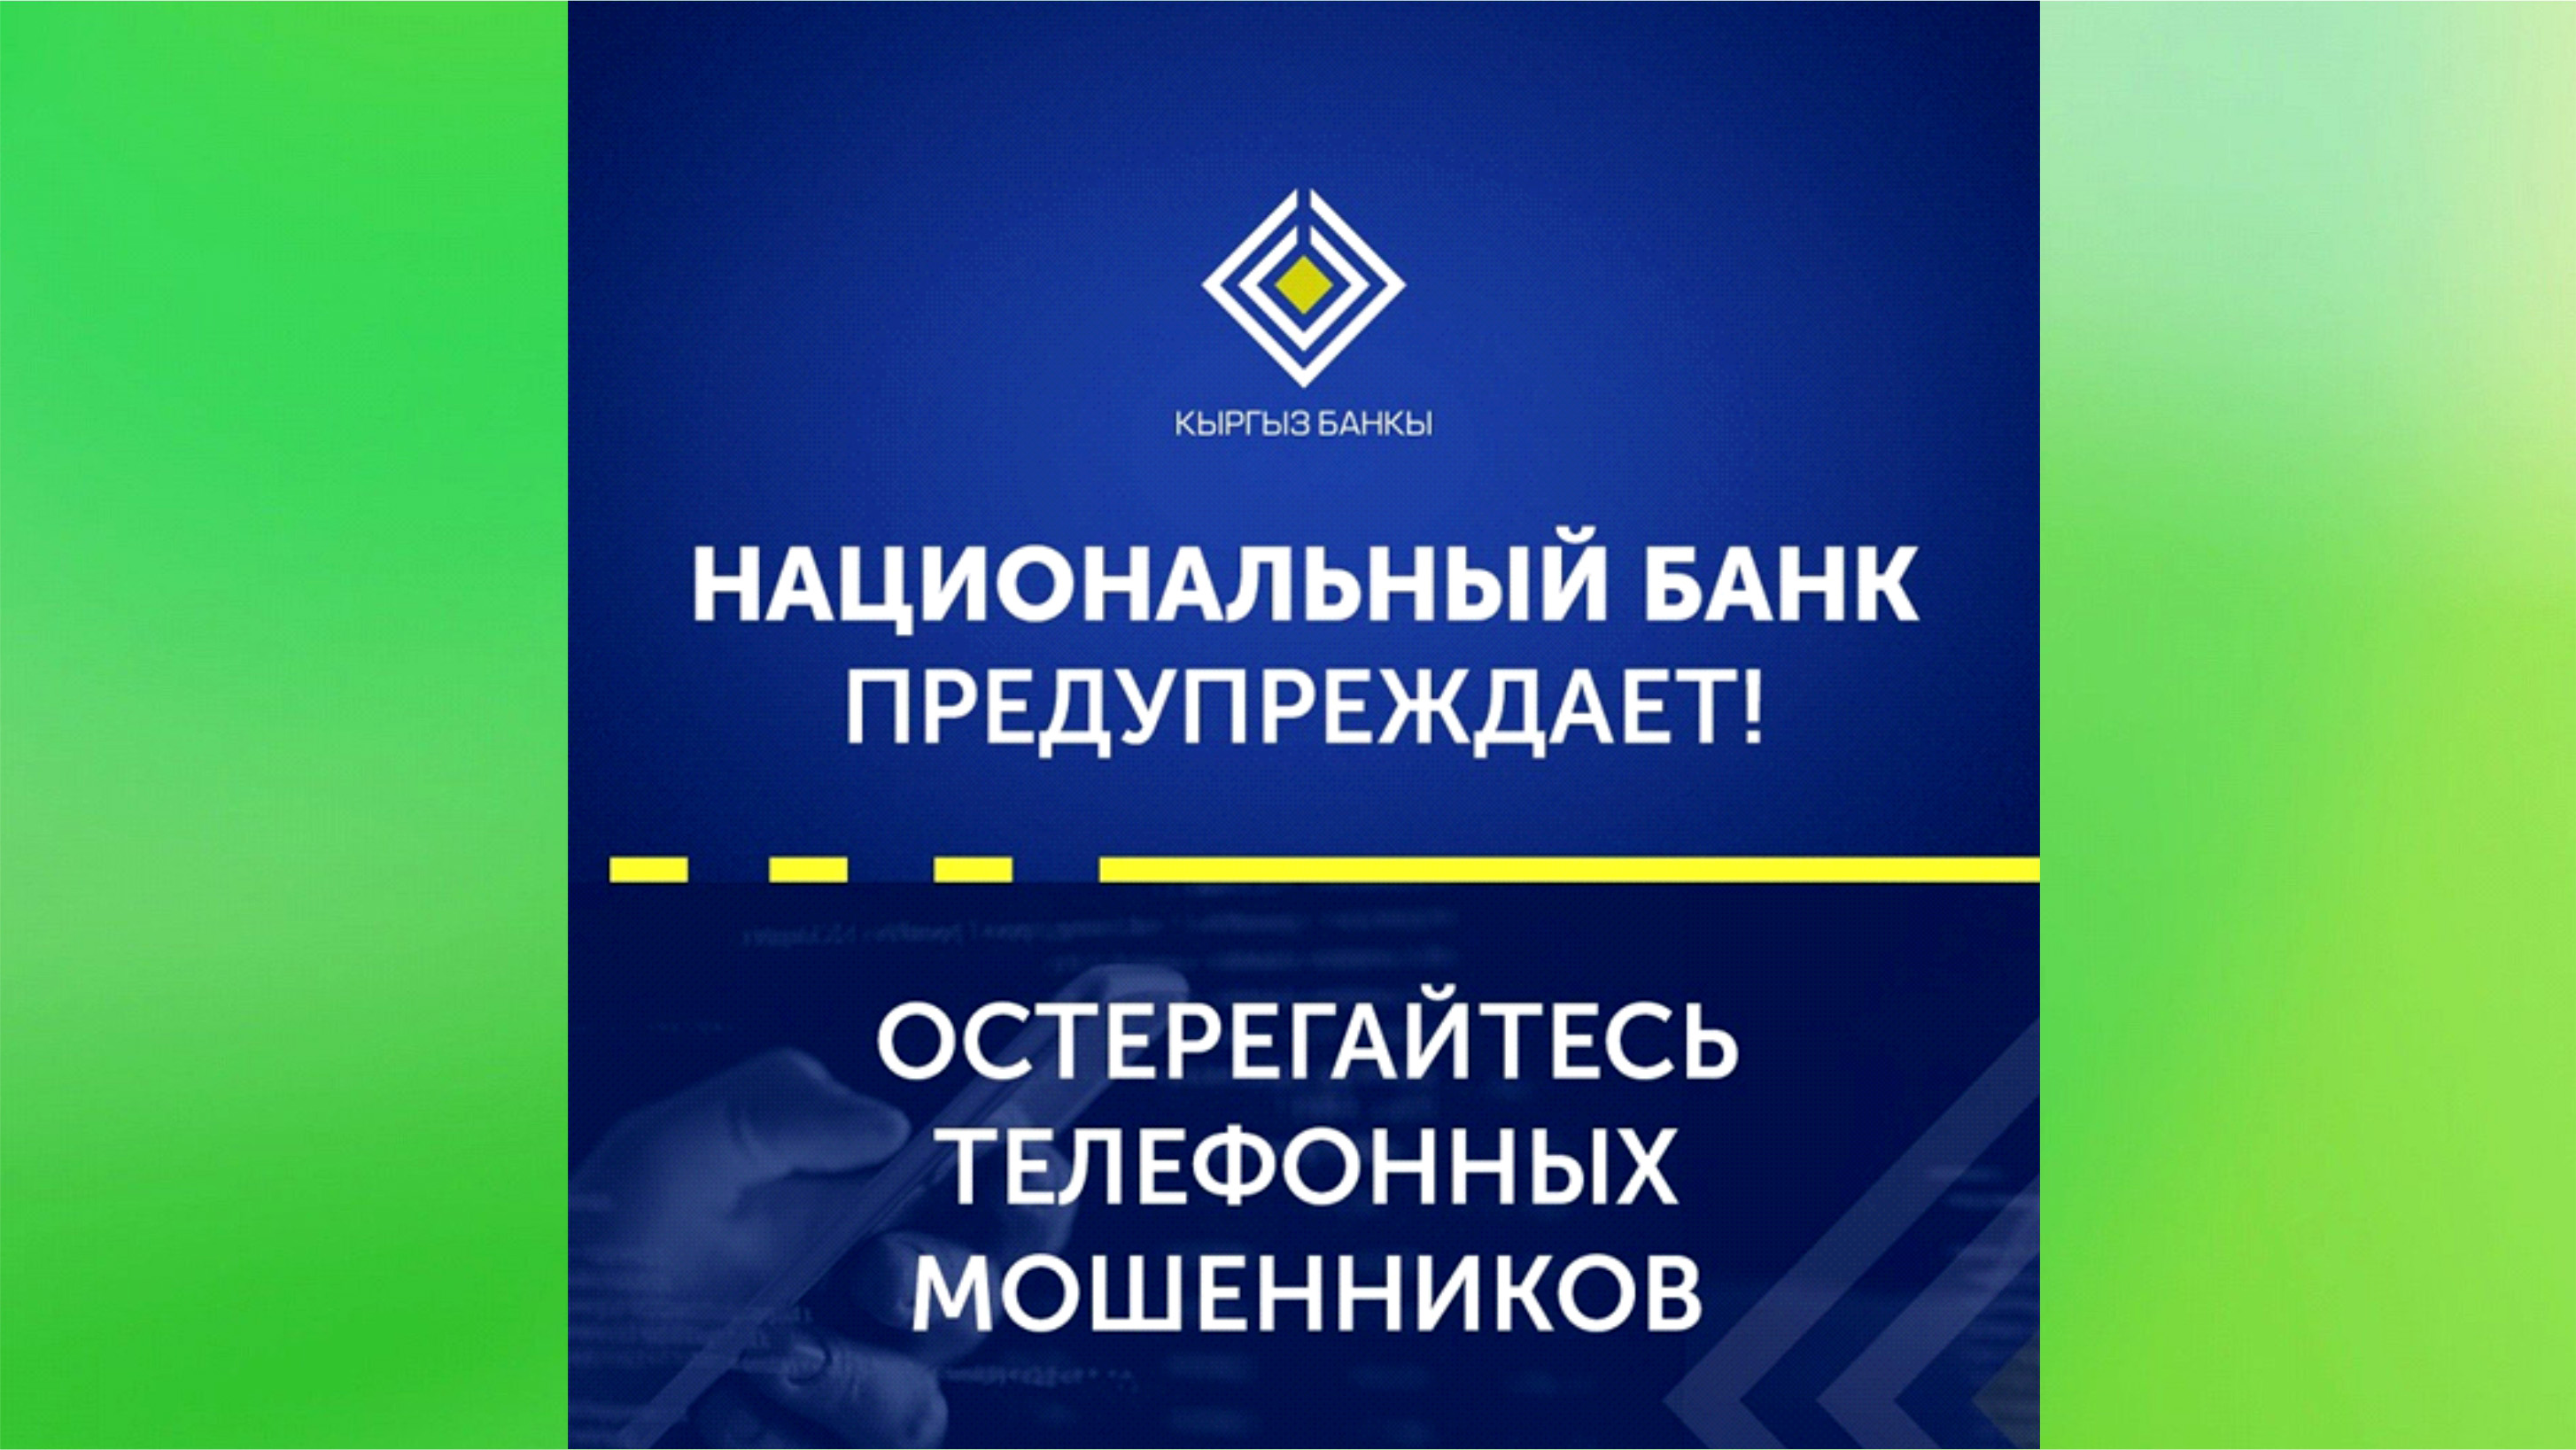 Национальный банк Кыргызской Республики предупреждает: участились случаи телефонного мошенничества! 